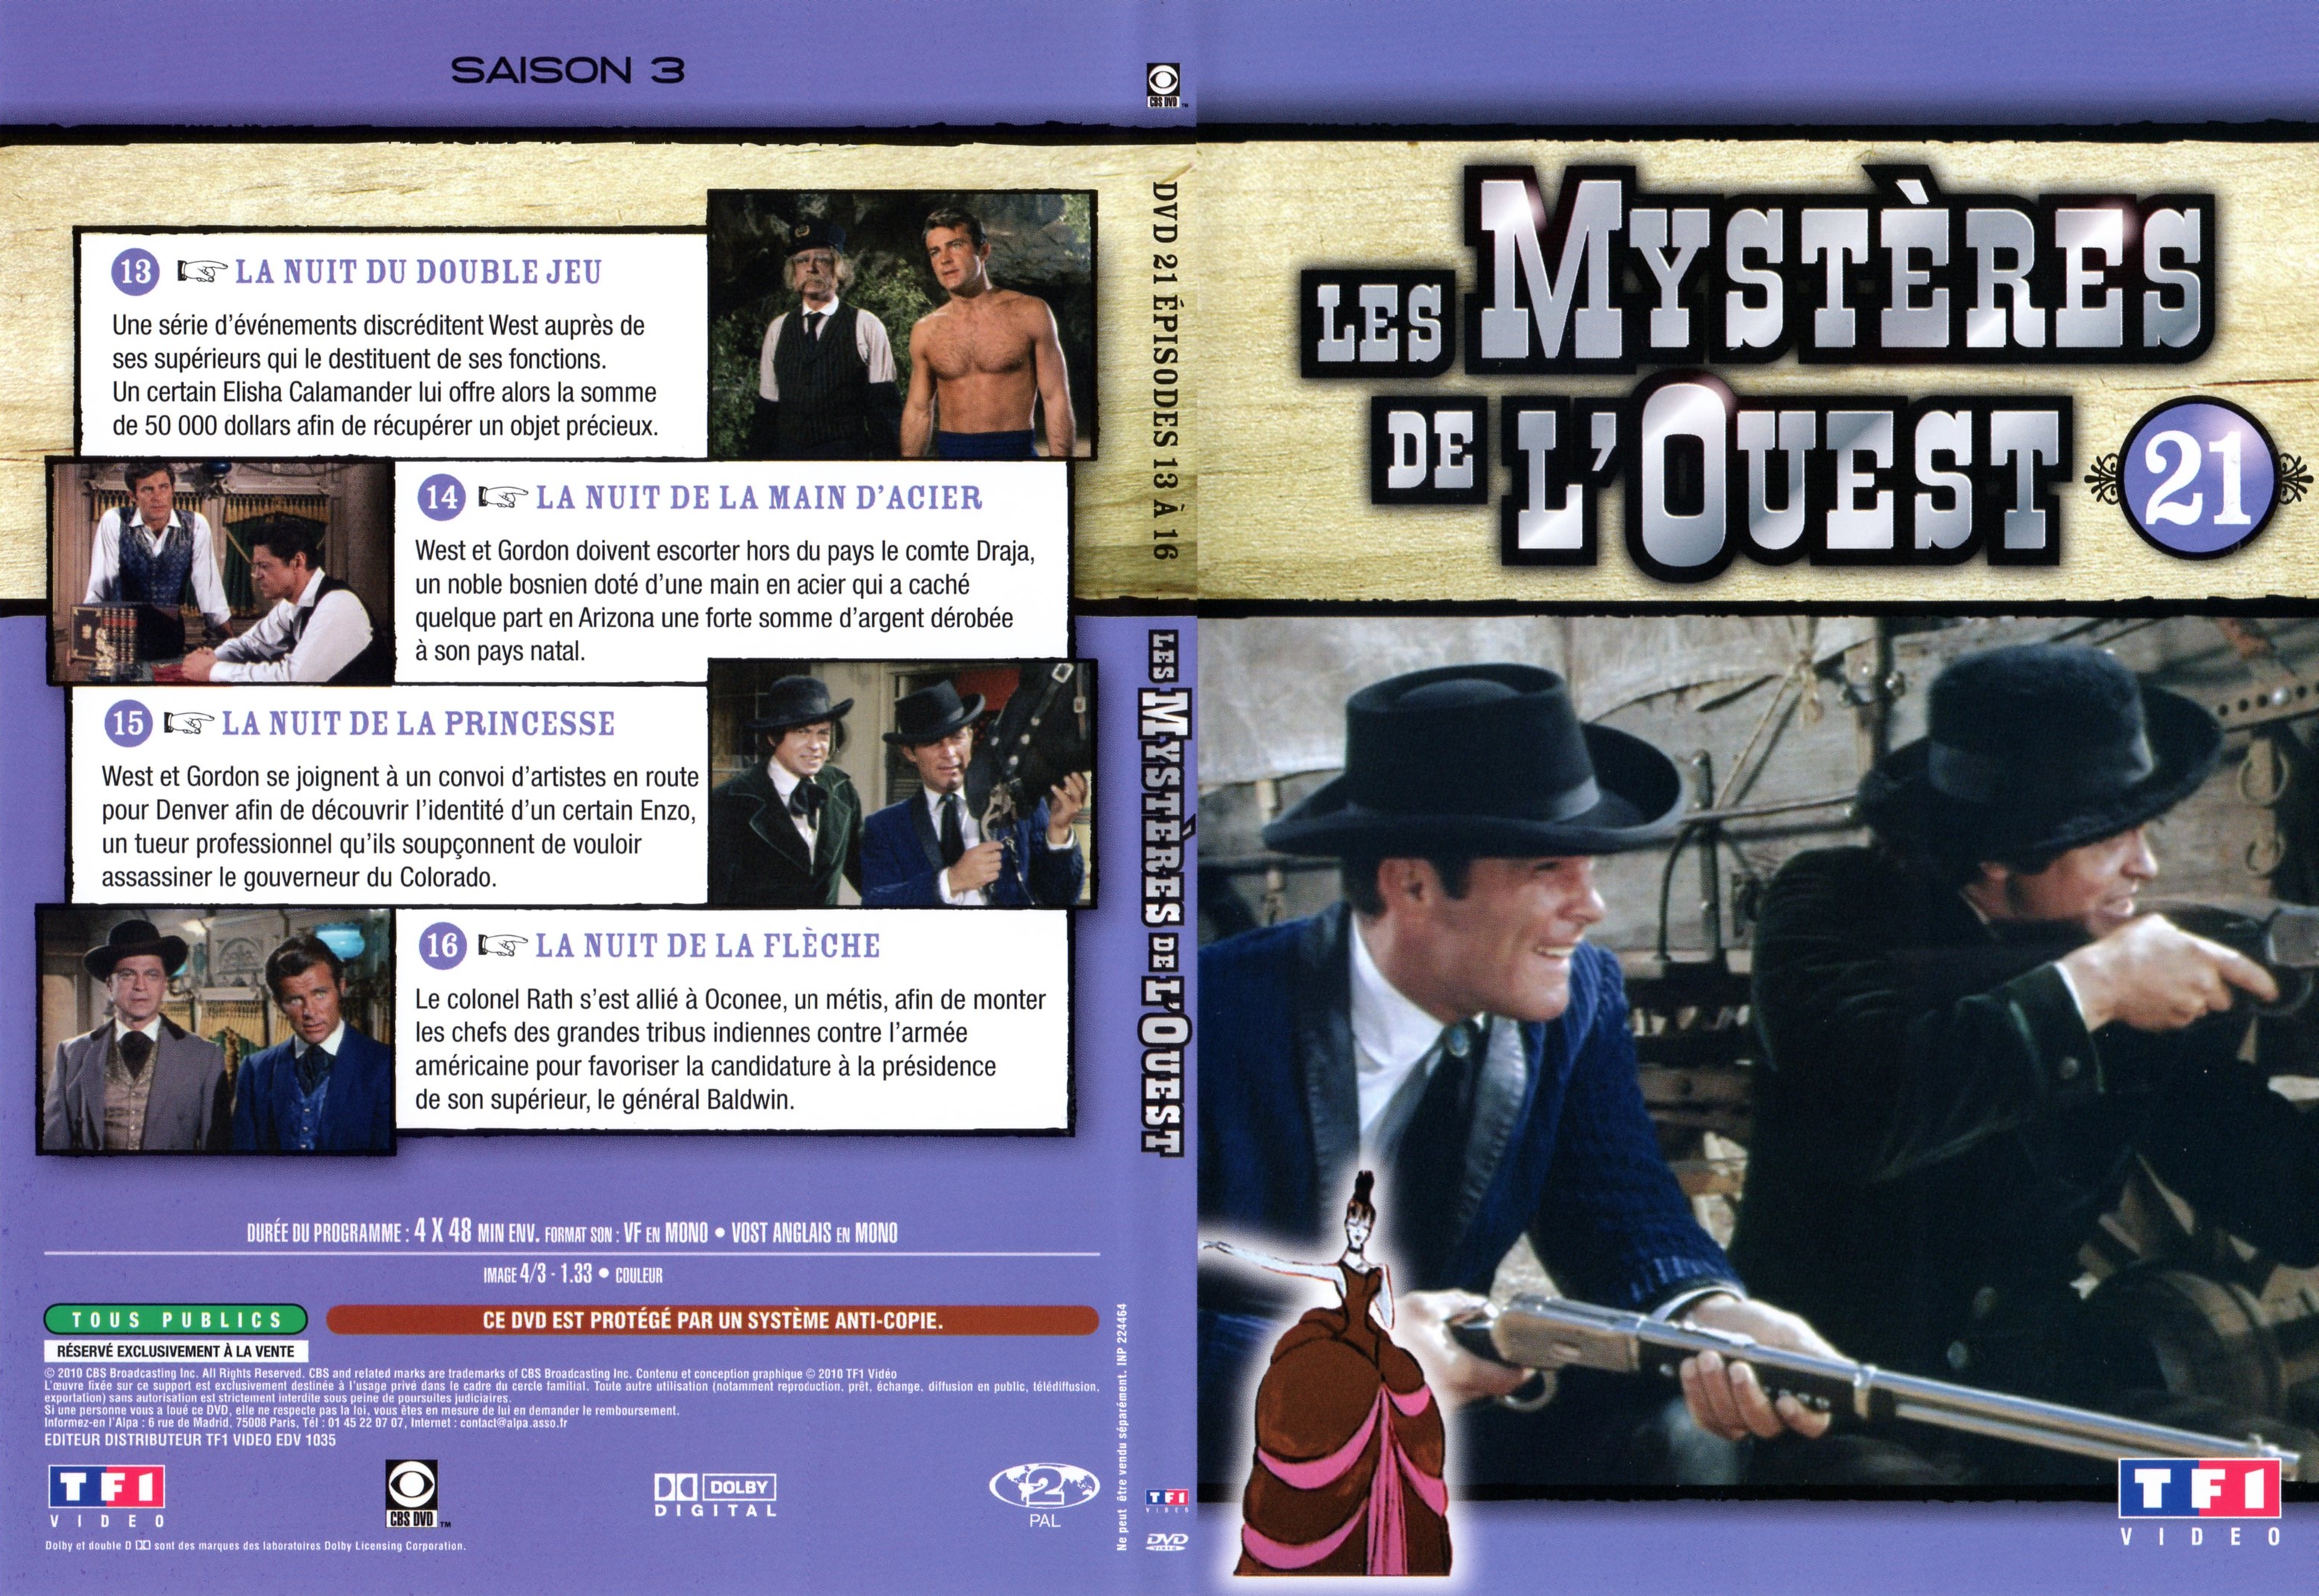 Jaquette DVD Les mystres de l